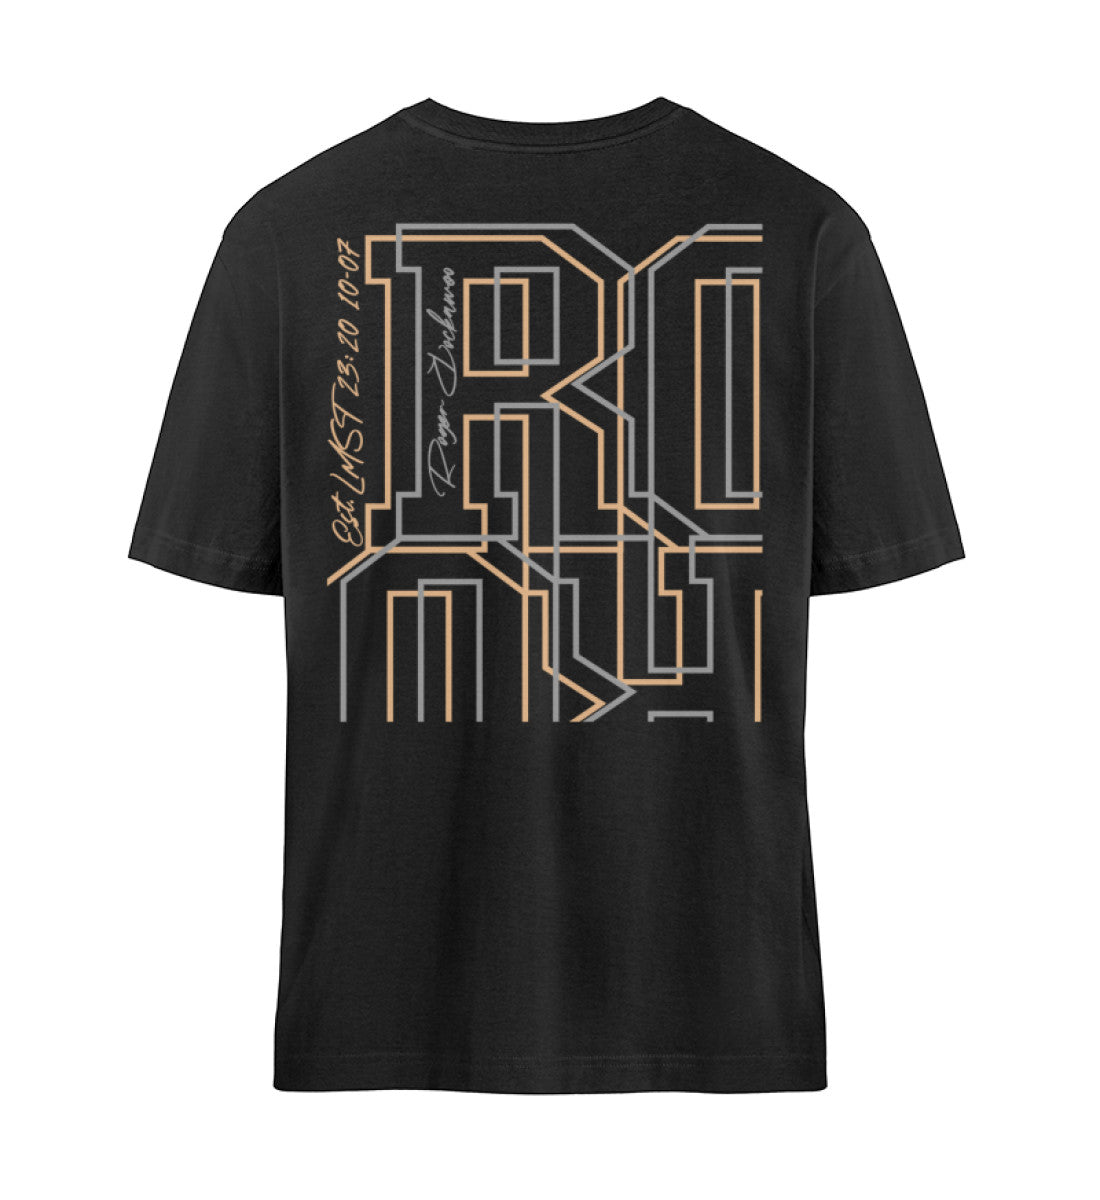 Schwarzes T-Shirt Unisex Relaxed Fit für Frauen und Männer bedruckt mit dem Design der Roger Rockawoo Kollektion mountainbike downhill culture